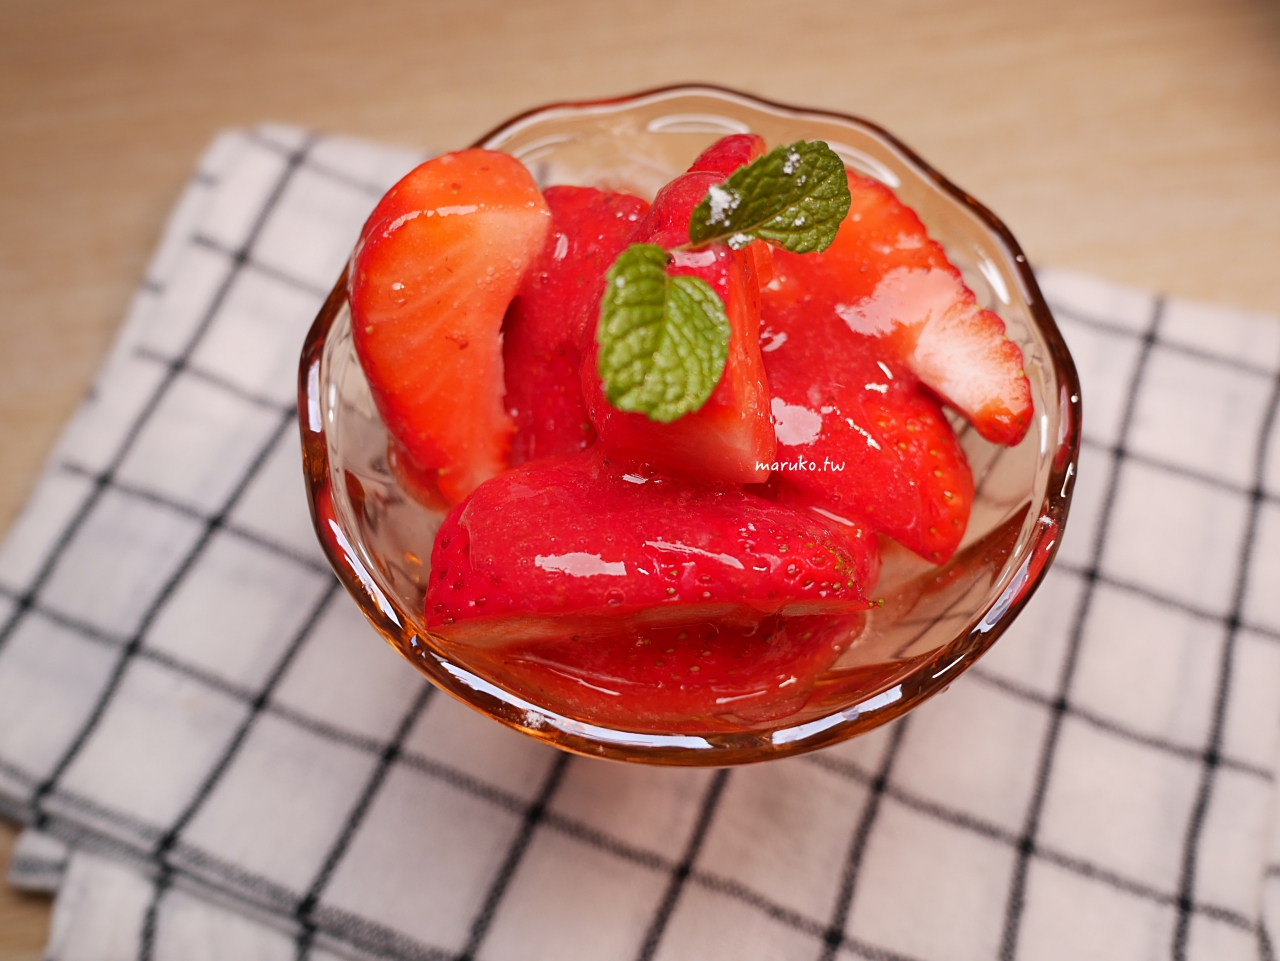 【食譜】新鮮草莓果醬 不加一滴水的草莓醬 沾著草莓吃,簡單又健康